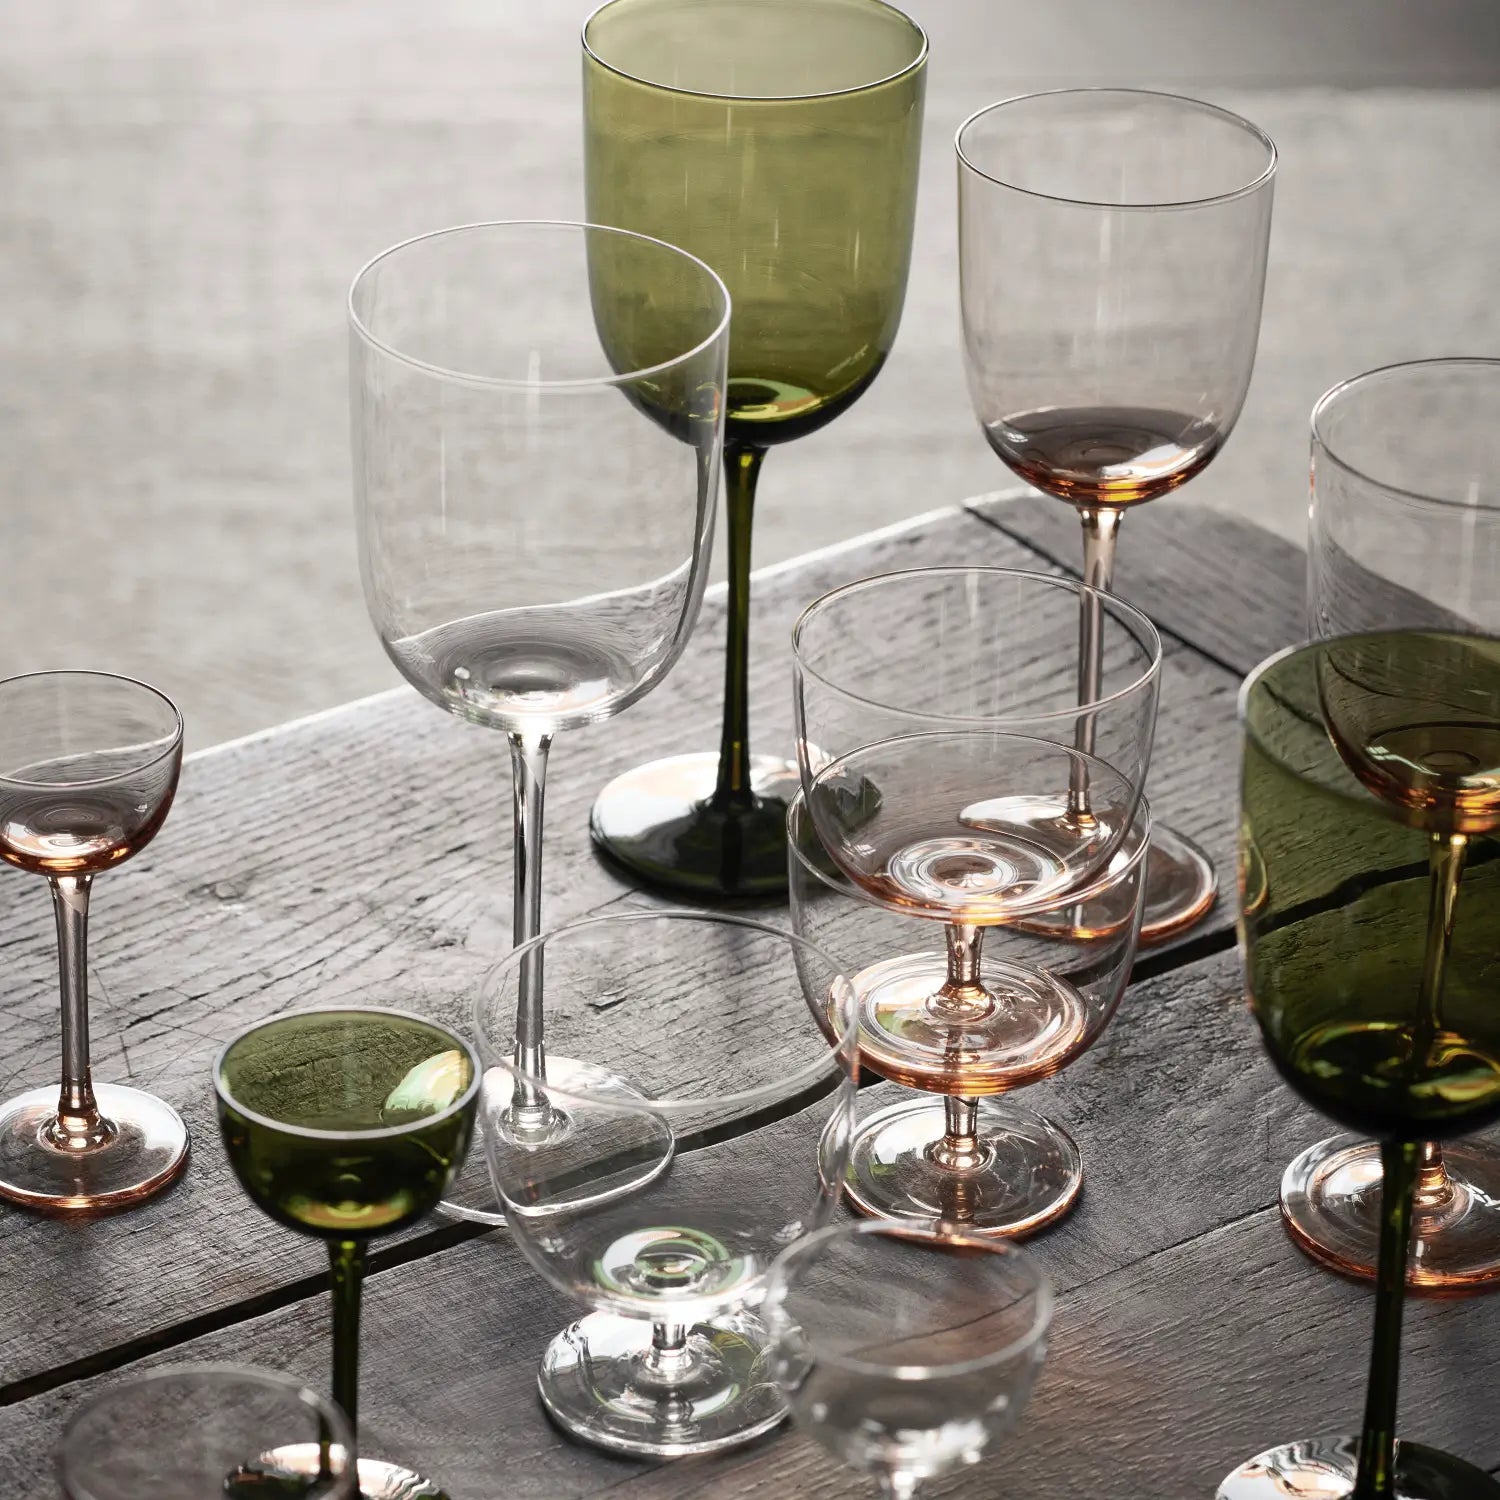 Ferm Living Host White Wine Glasses - Set of 2 Moss Green - KANSO